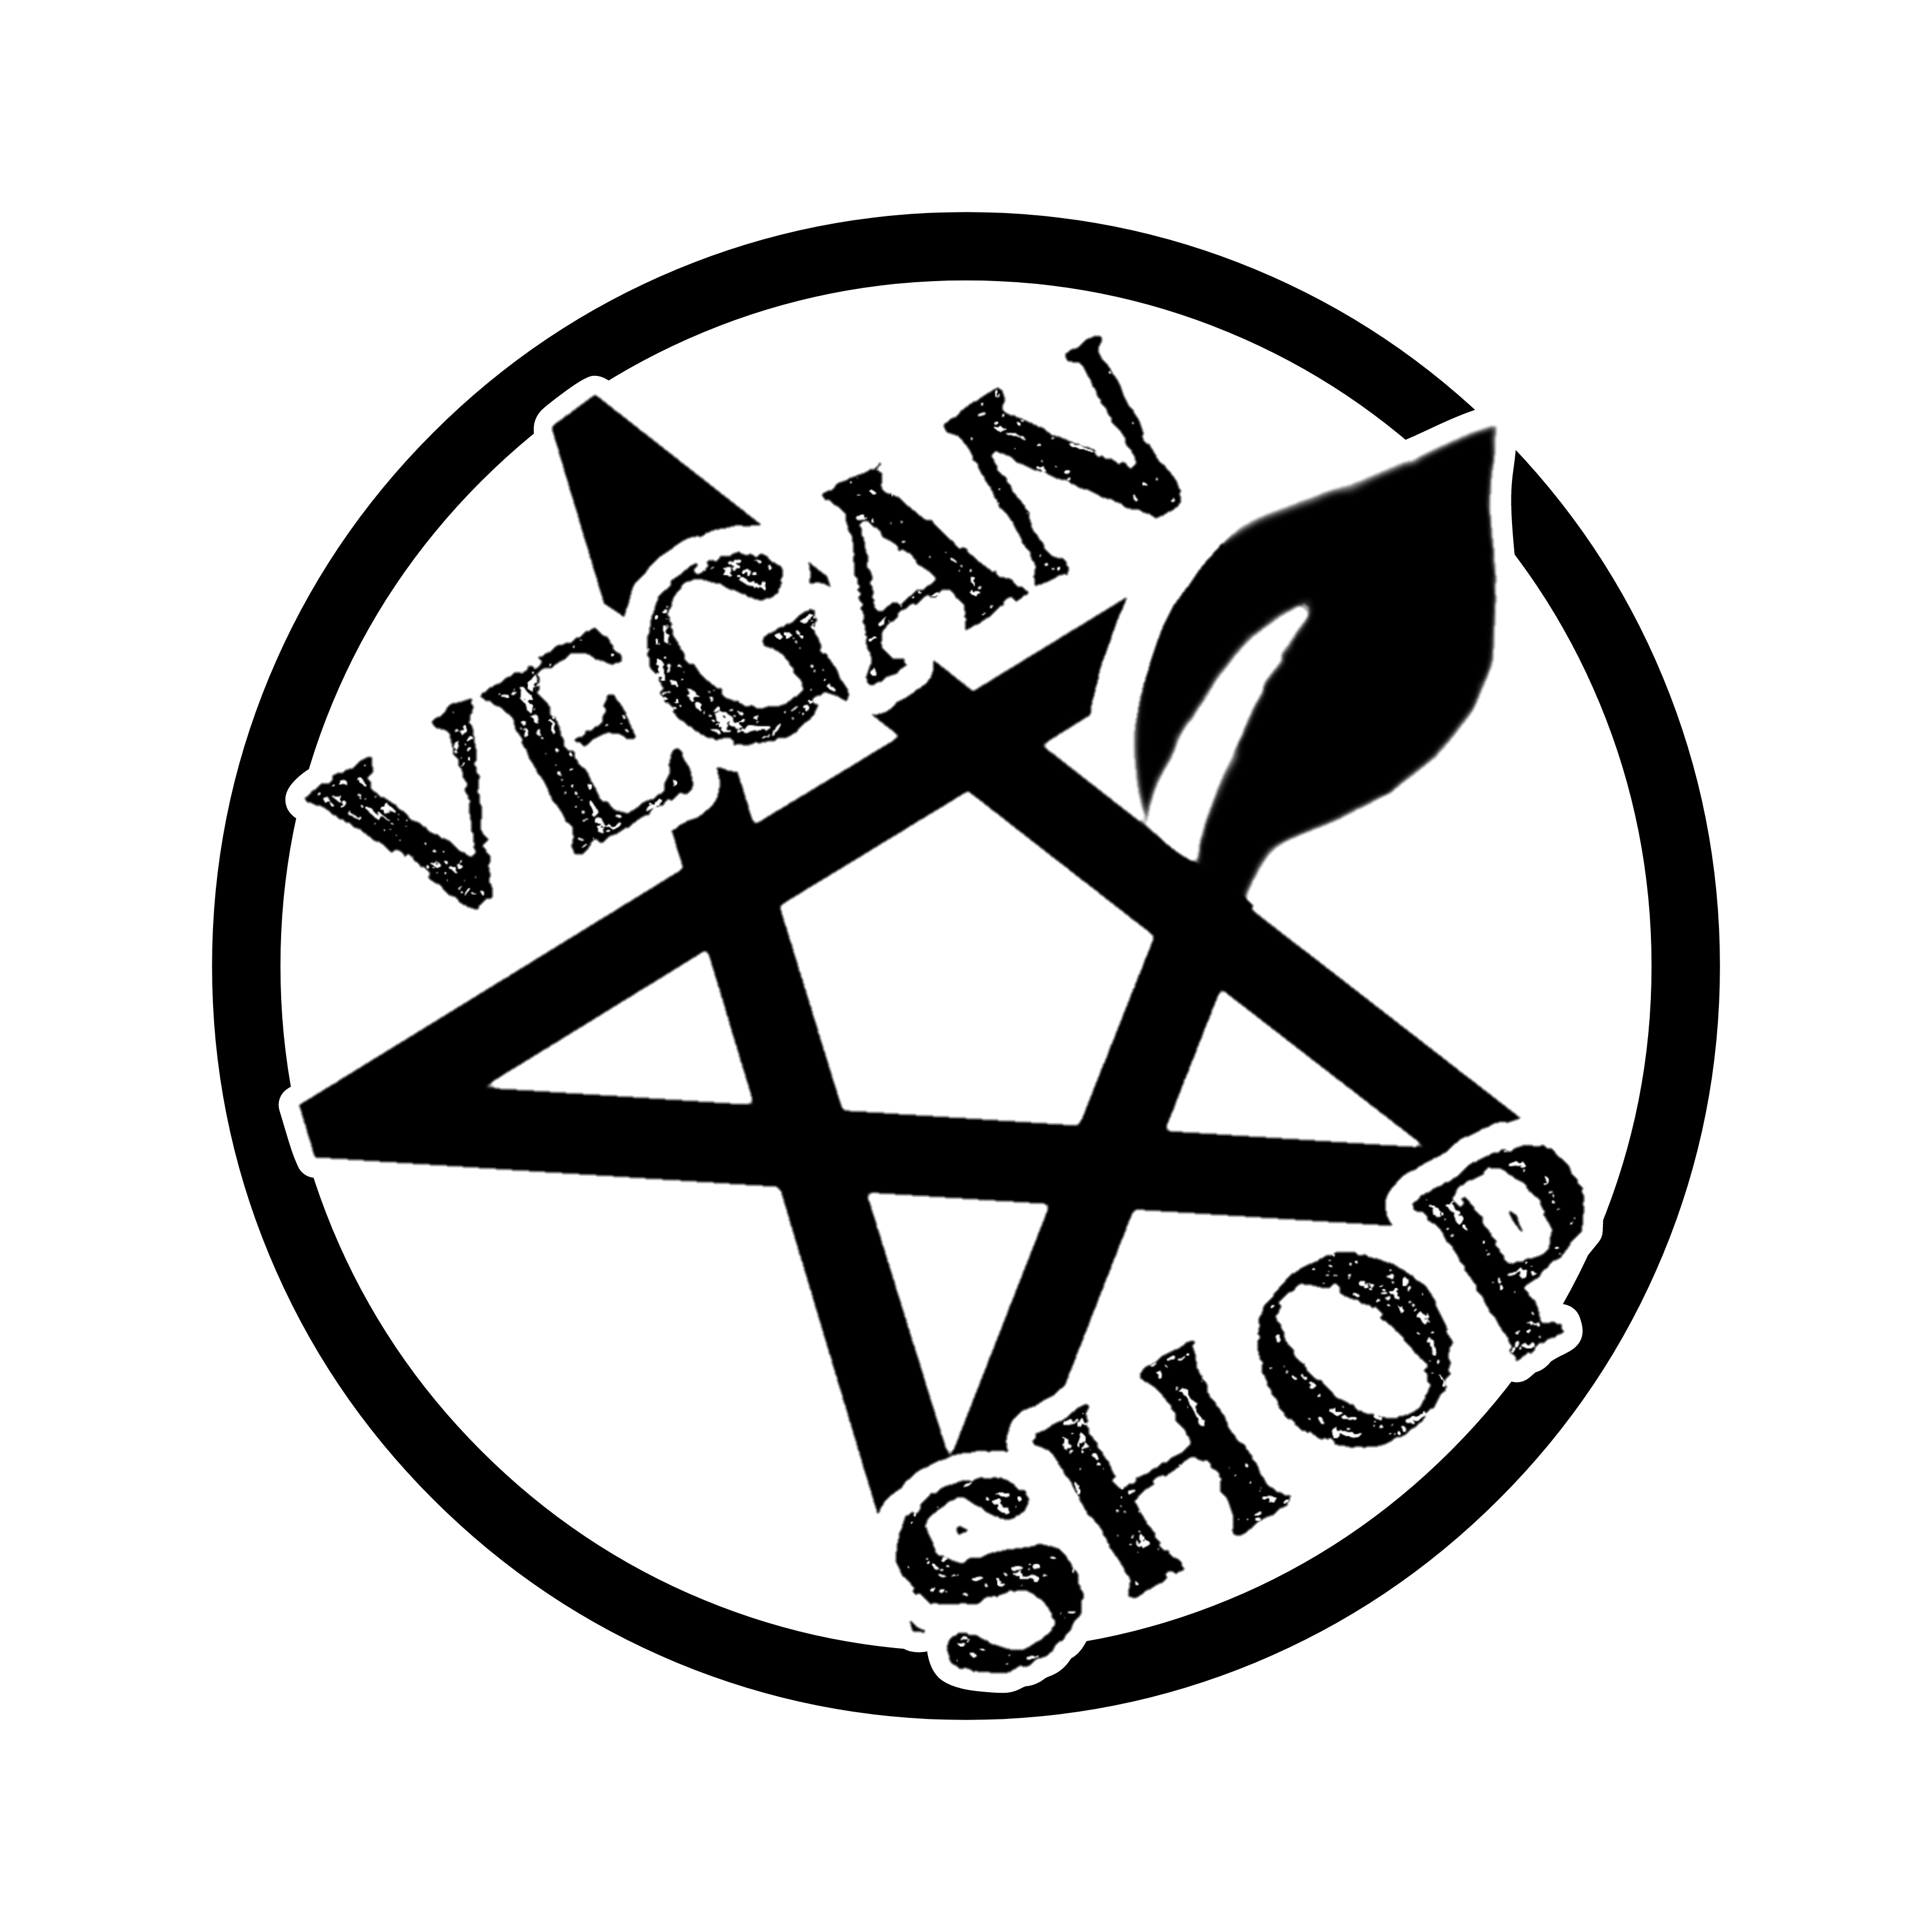 Weird Kult is a Vegan Store